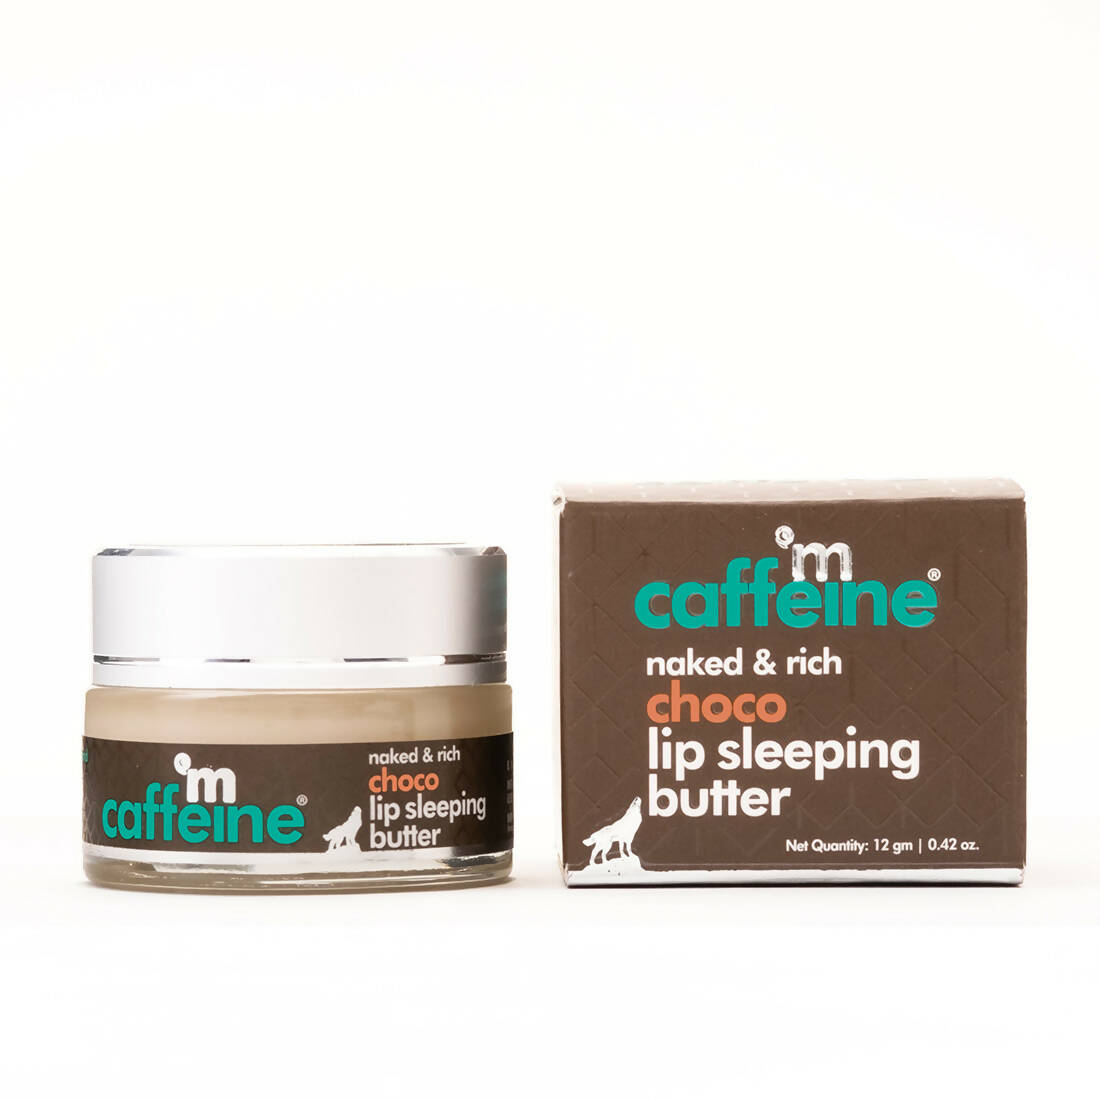 mCaffeine Choco Lip Sleeping Butter - Distacart